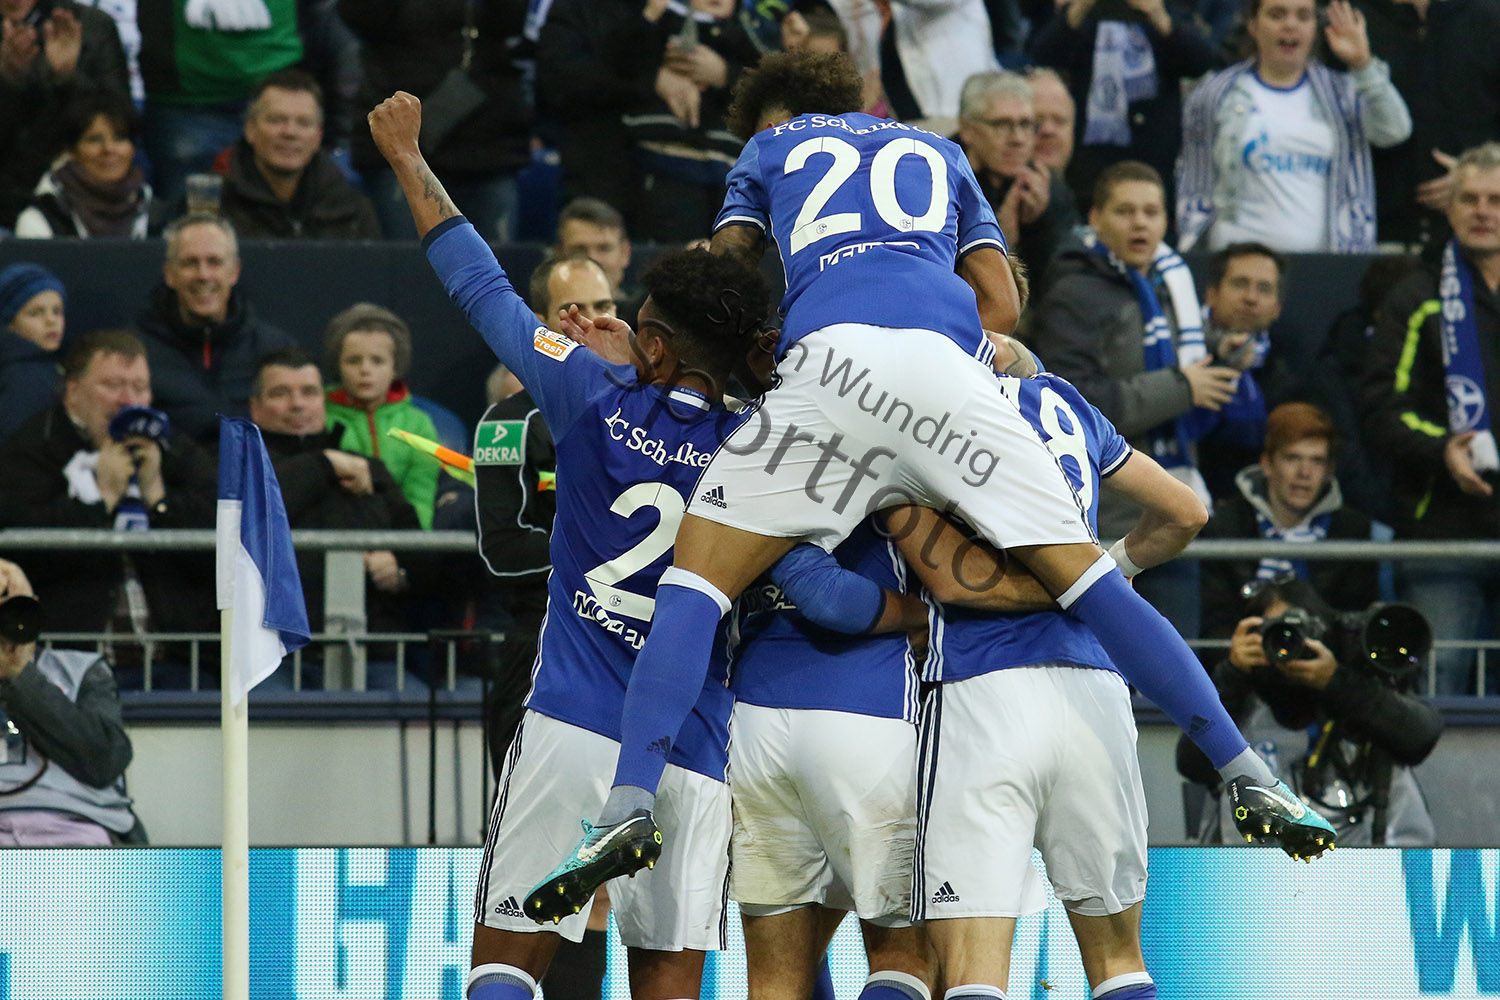 1. BL - 17/18 - FC Schalke 04 vs. Hamburger SV